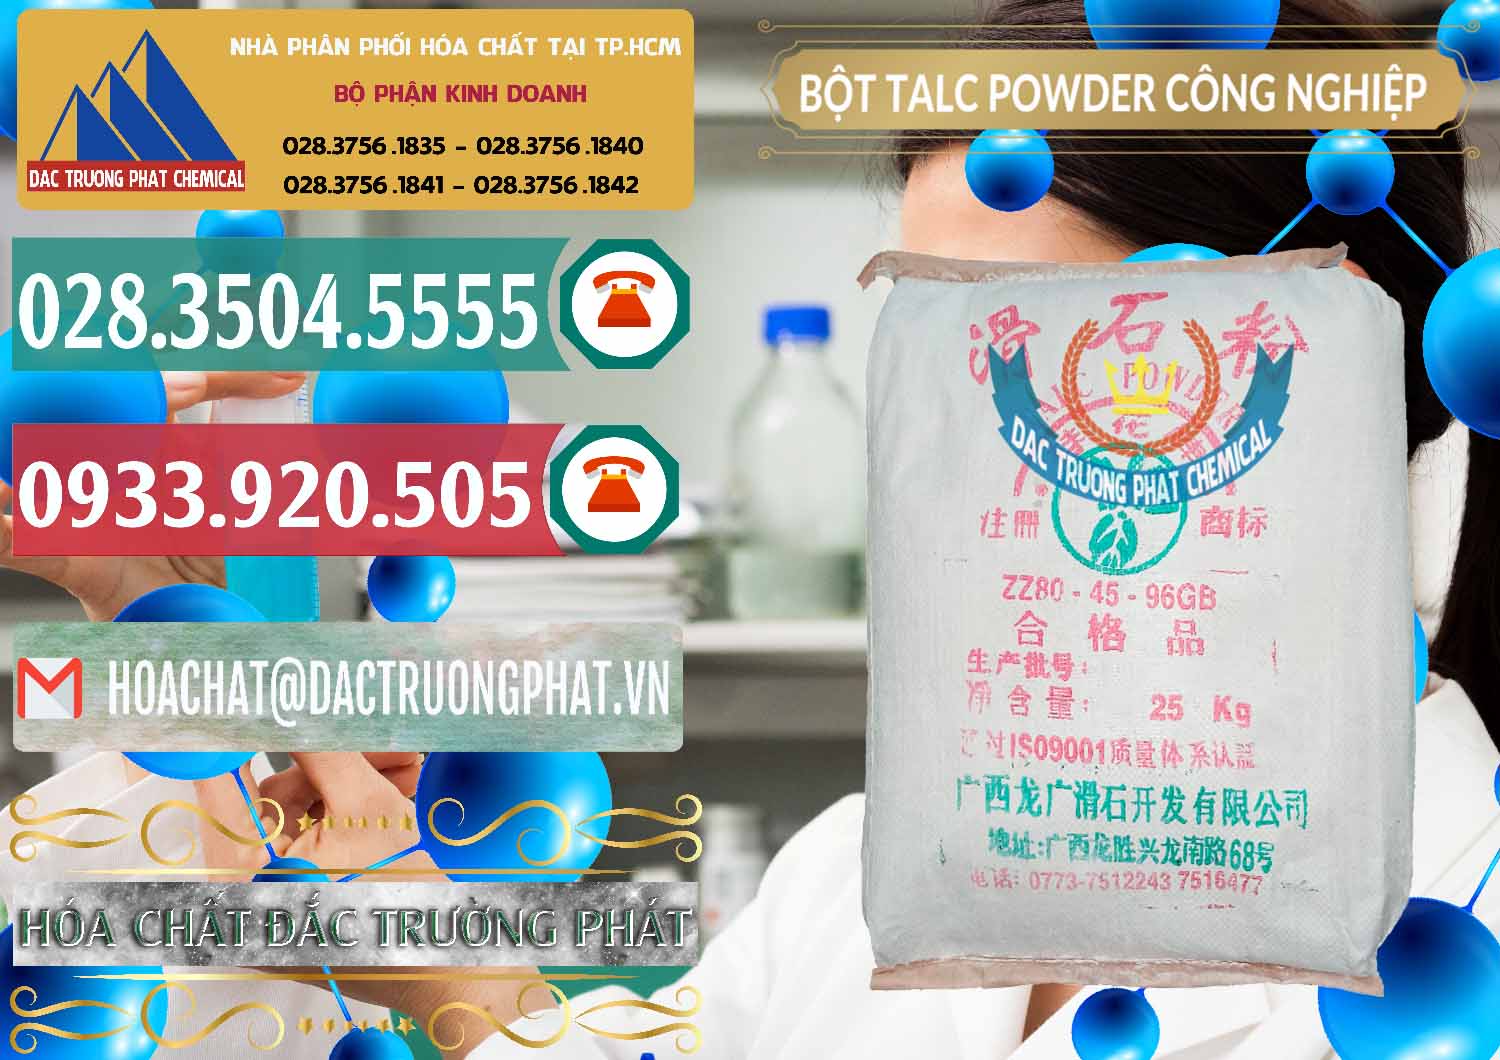 Công ty chuyên cung cấp - bán Bột Talc Powder Công Nghiệp Trung Quốc China - 0037 - Cung cấp _ nhập khẩu hóa chất tại TP.HCM - muabanhoachat.vn